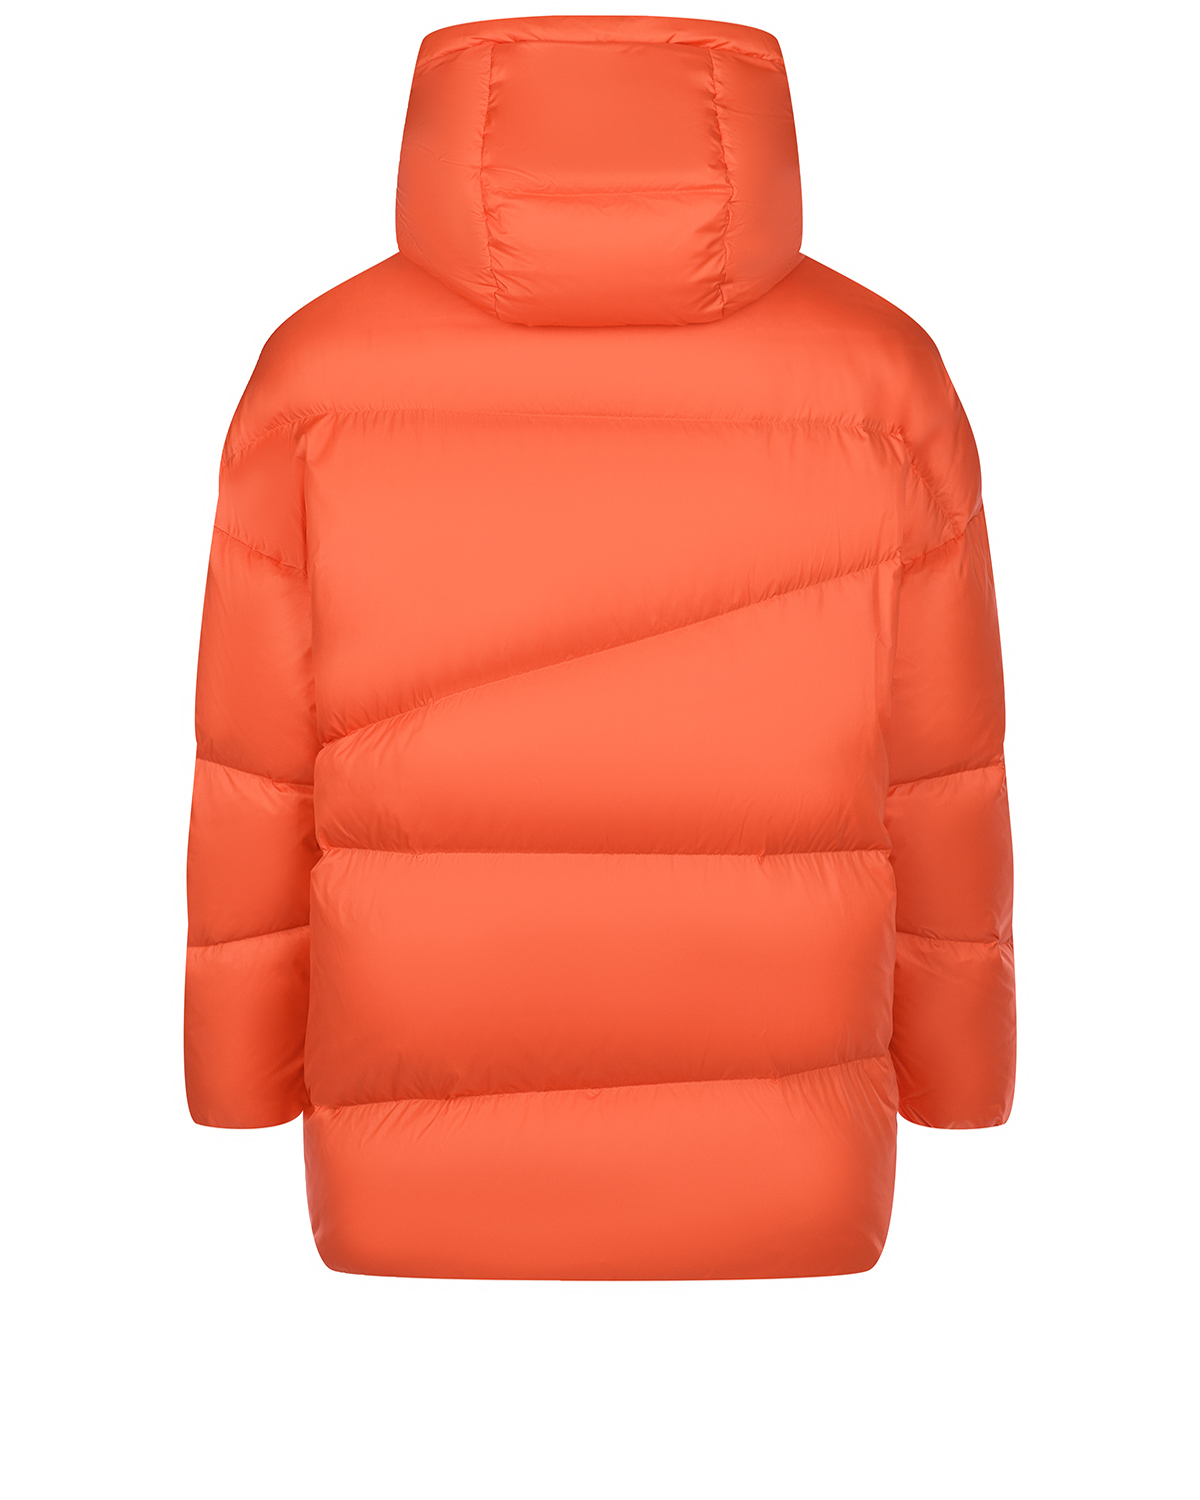 Удлиненная оранжевая куртка с капюшоном Naumi, размер 38, цвет оранжевый - фото 8